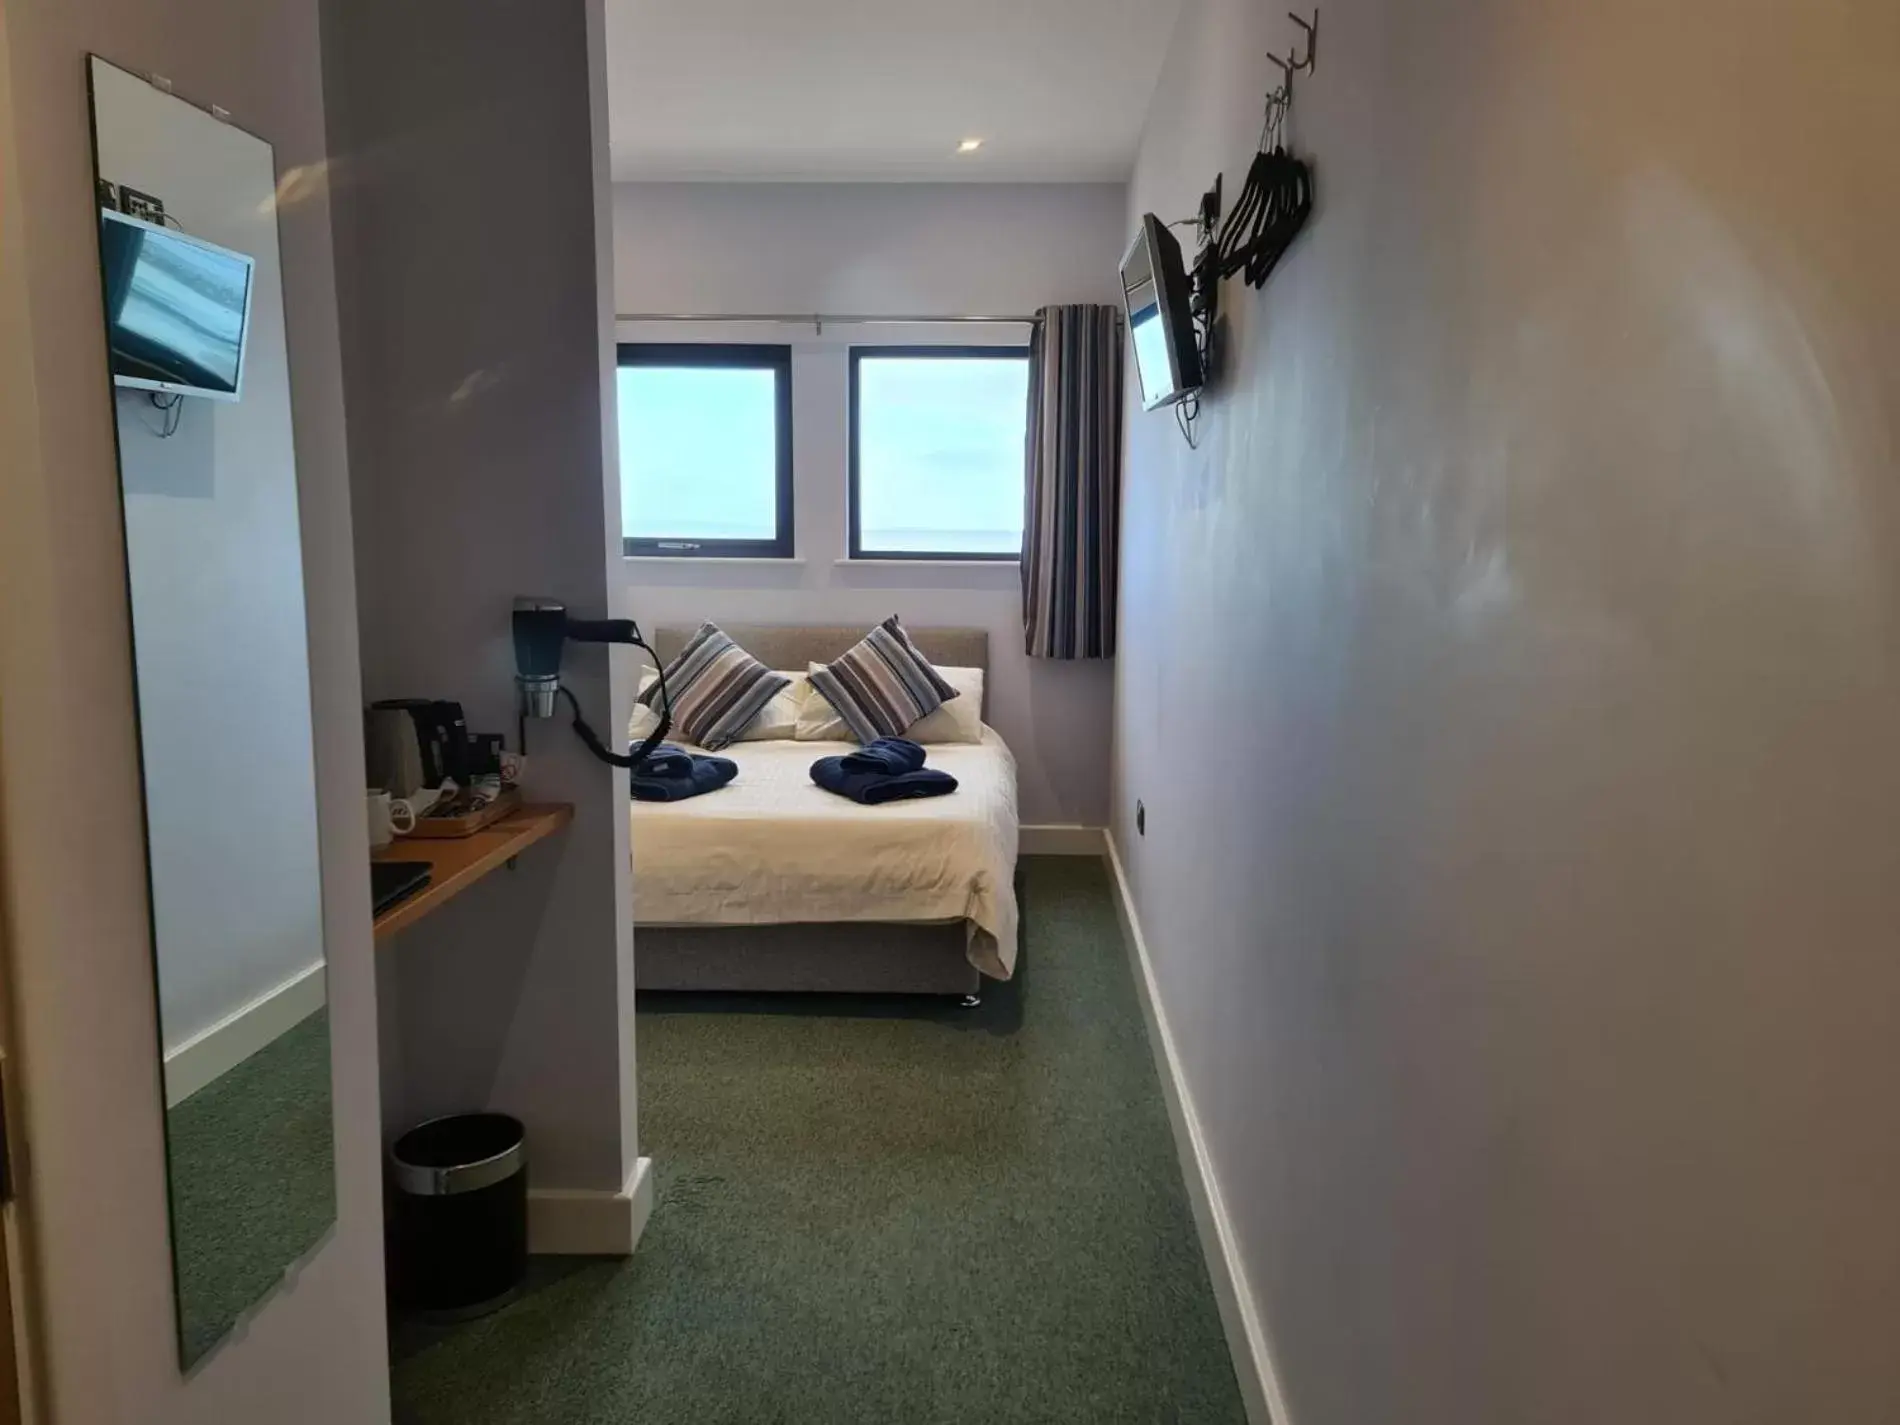 Double Room with Sea View in No 8 Ocean Cabins - Saundersfoot Harbour - Saundersfoot